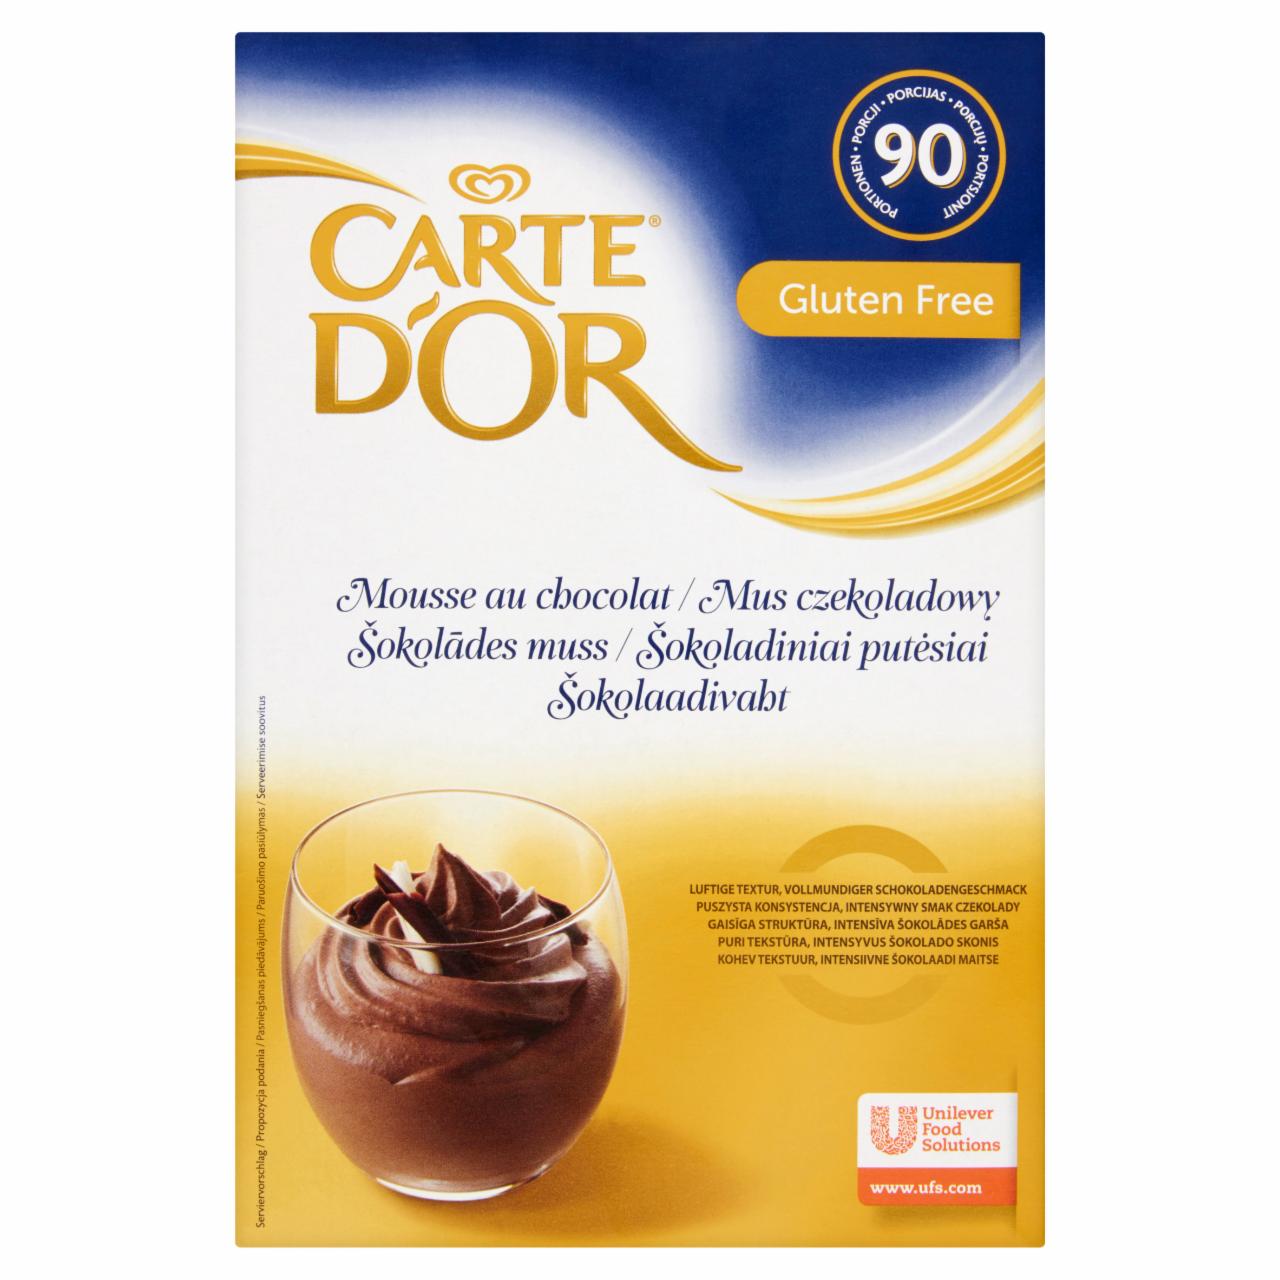 Képek - Carte D'Or csokoládé ízű mousse alap 1,44 kg